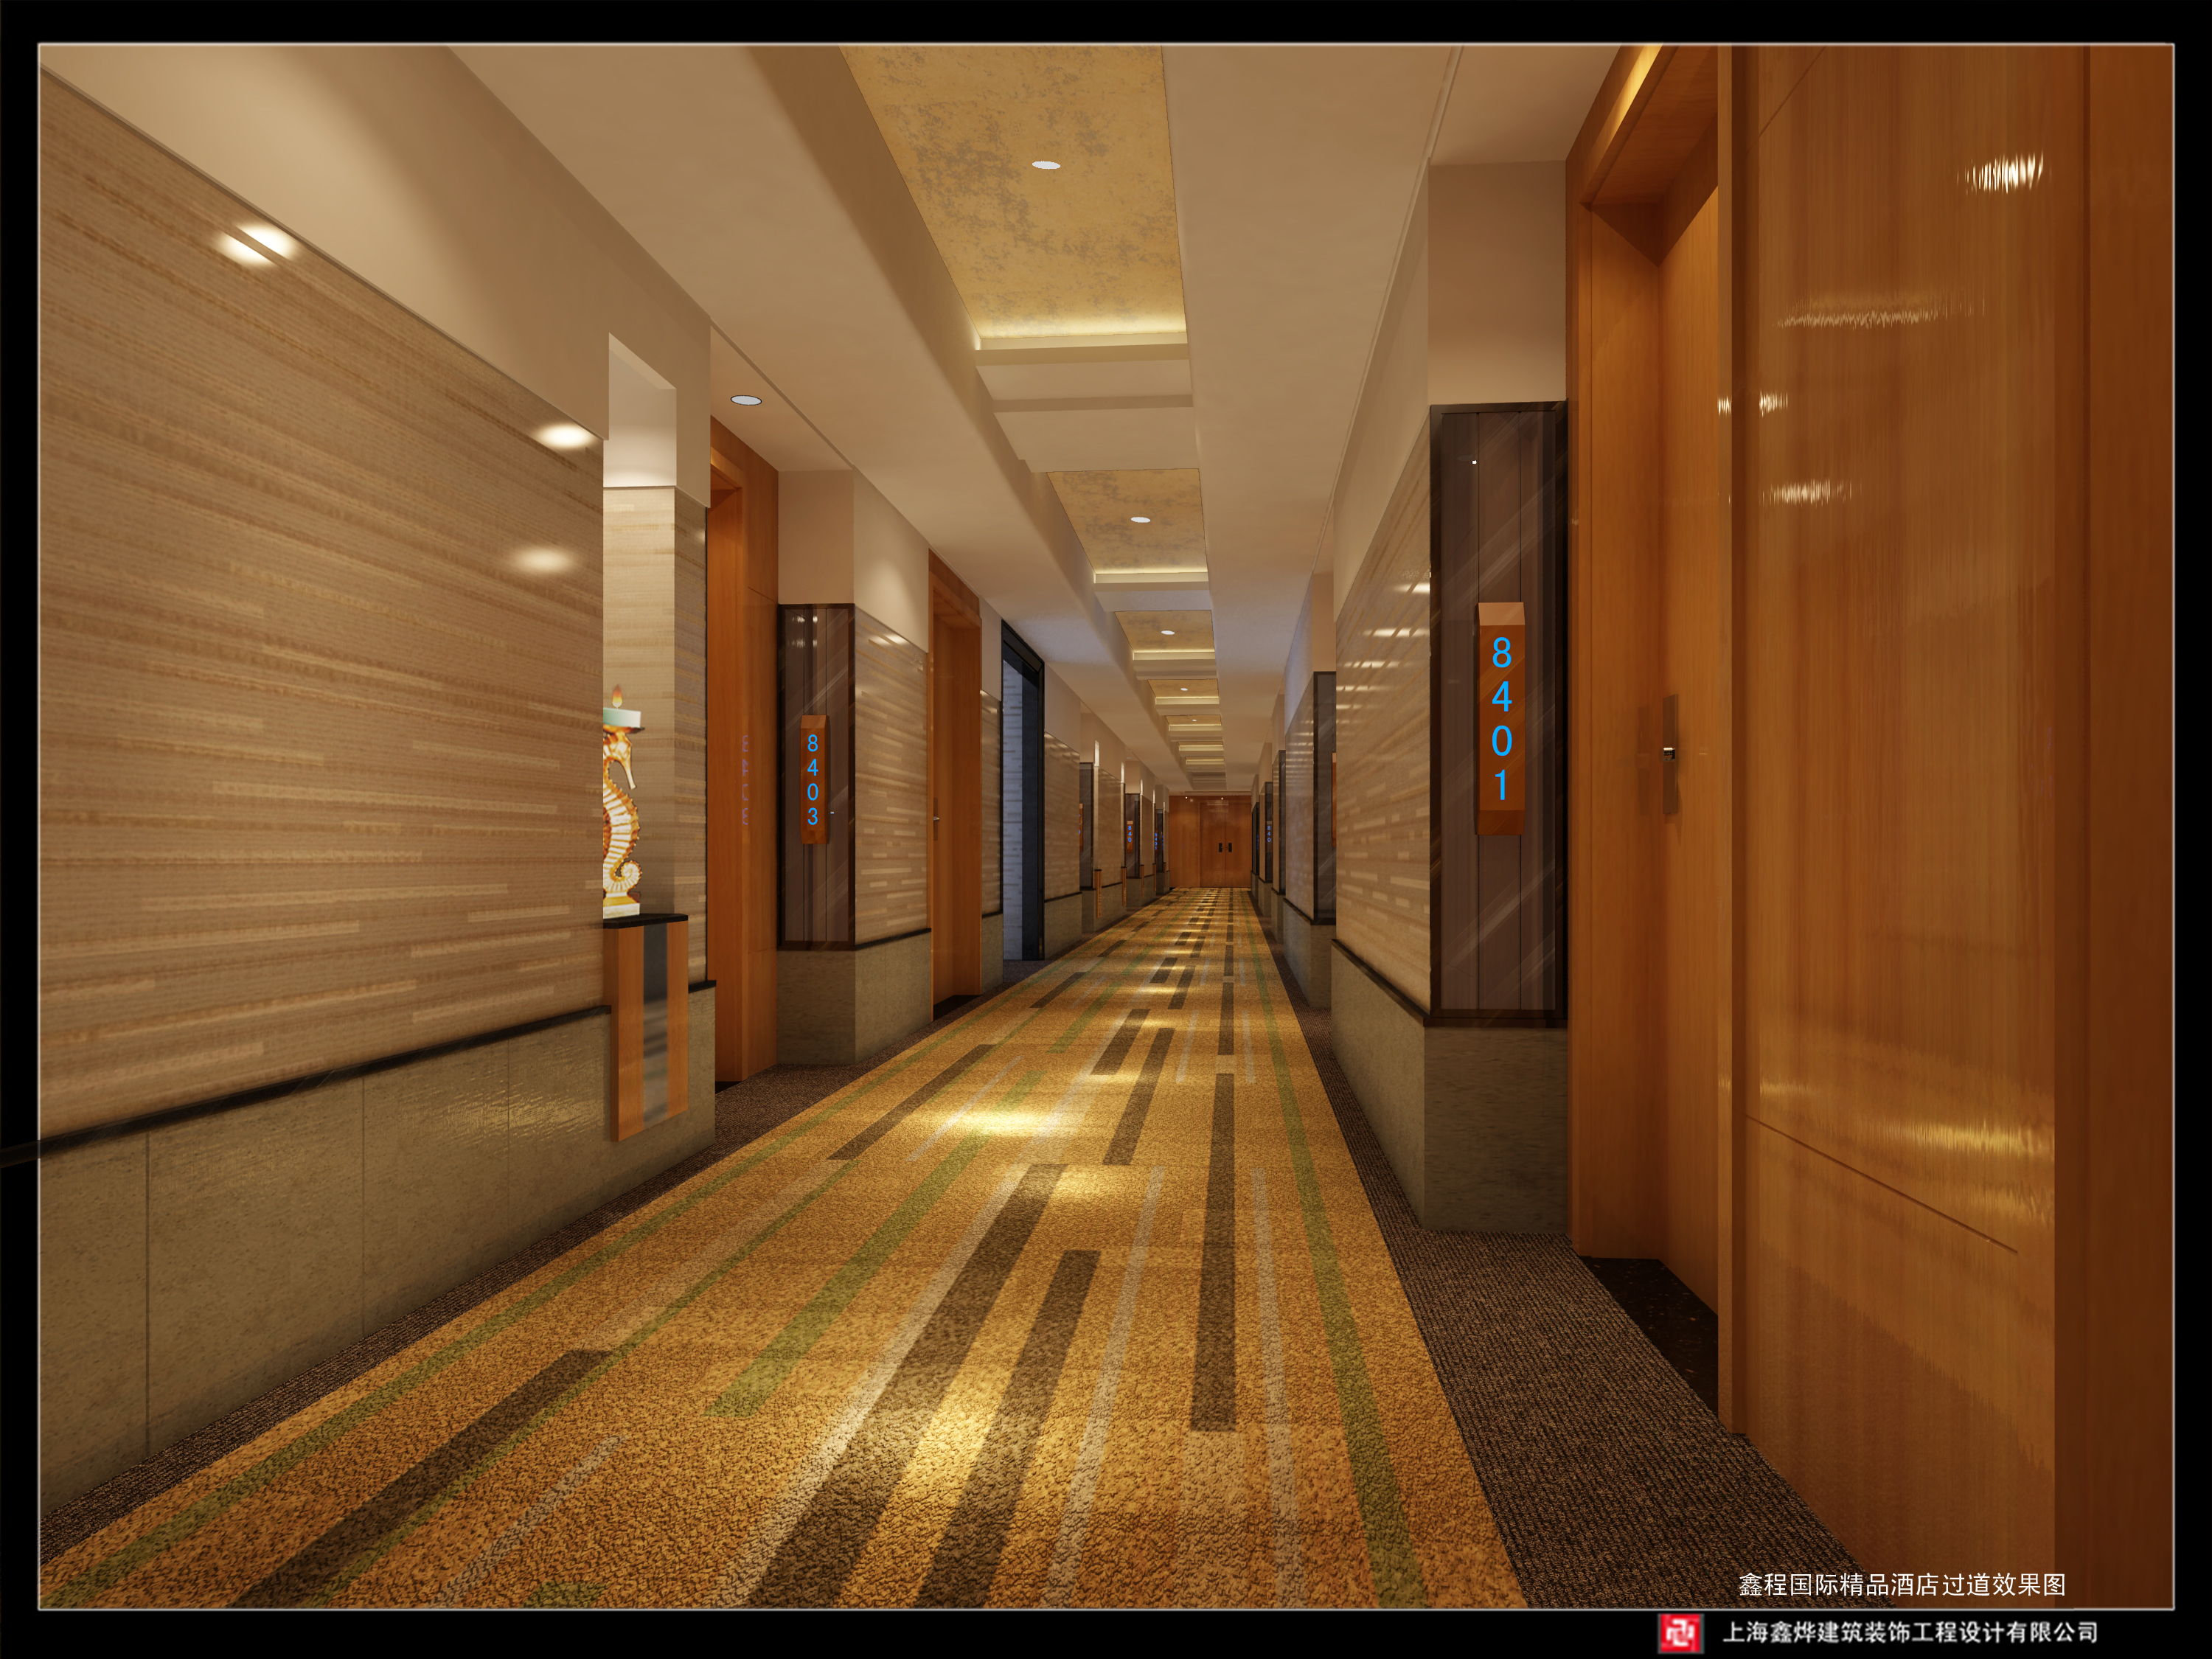 新中式酒店过道模型+免费3D模型下载+免费SU模型下载+炫云云模型网站